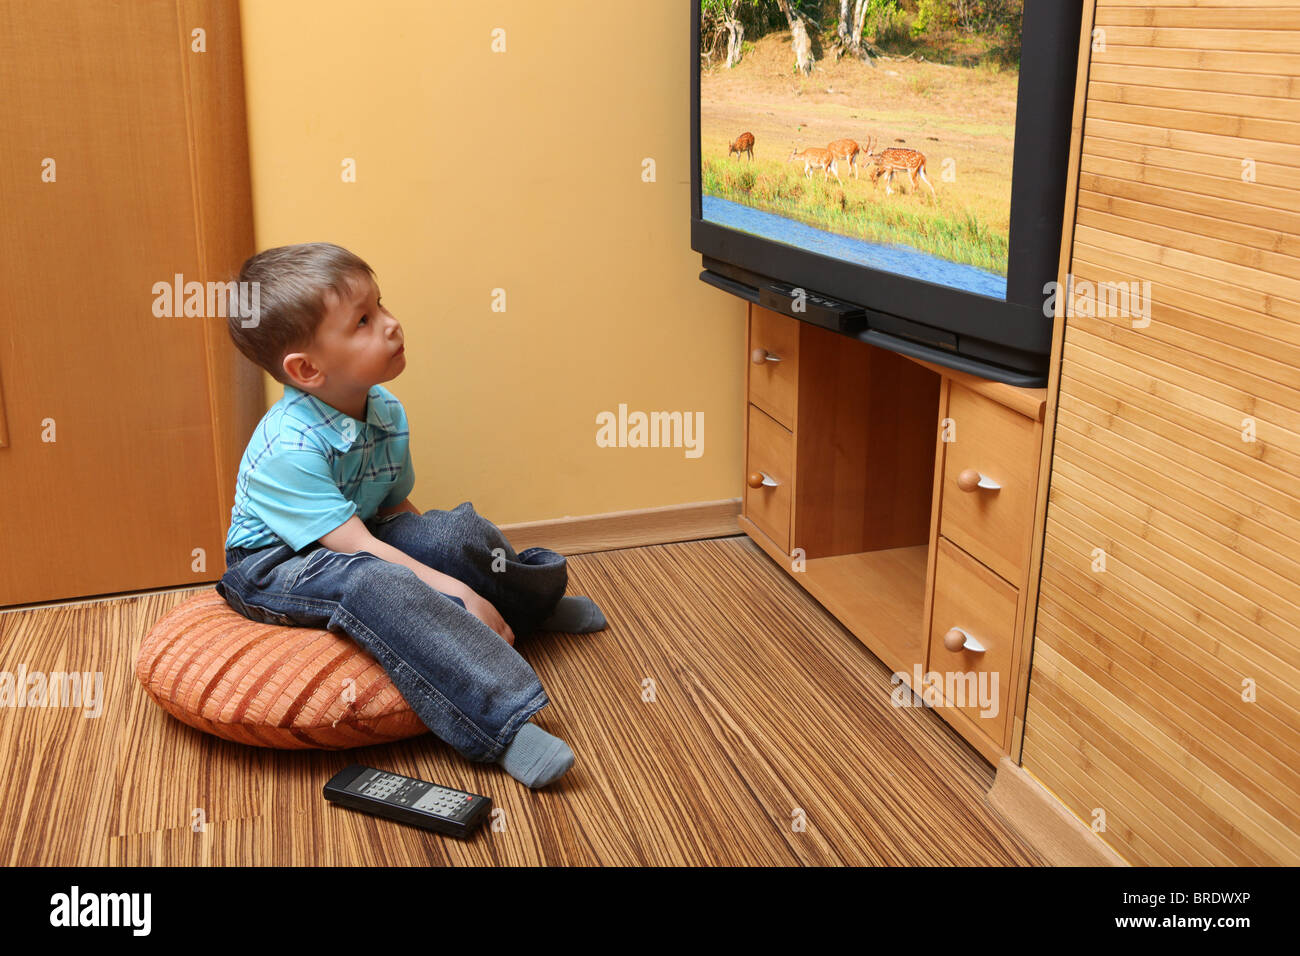 Kleiner Junge Kino im Fernsehen anschauen Stockfoto